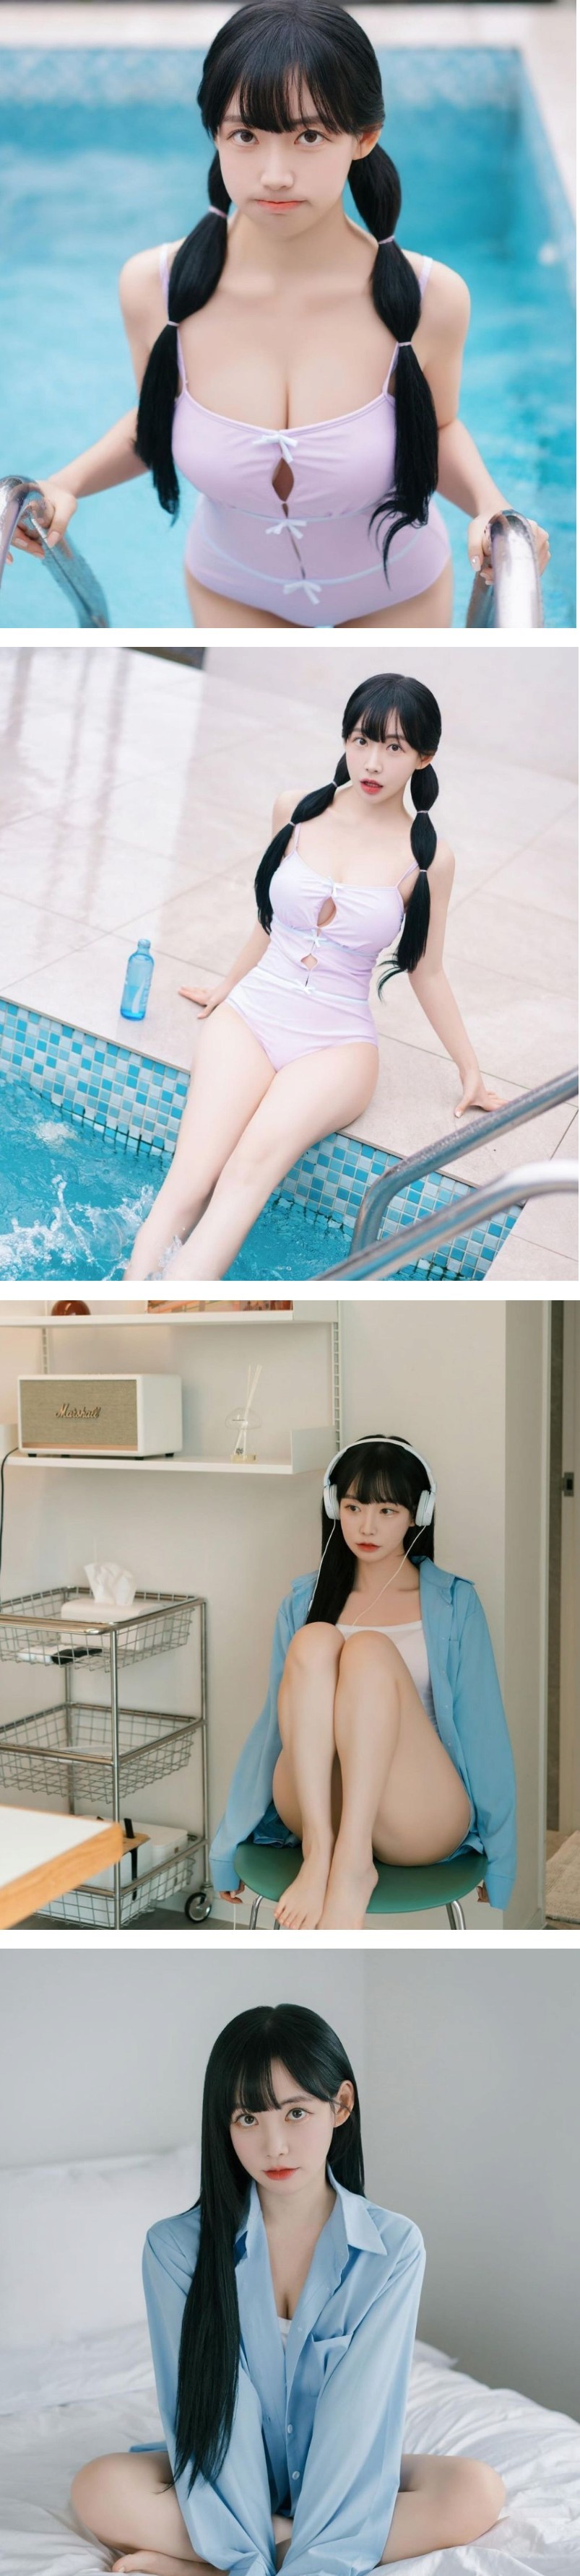 (SOUND)곽민선 아나한테 사진집 선물 받은 감스트 + 수영복 몸매